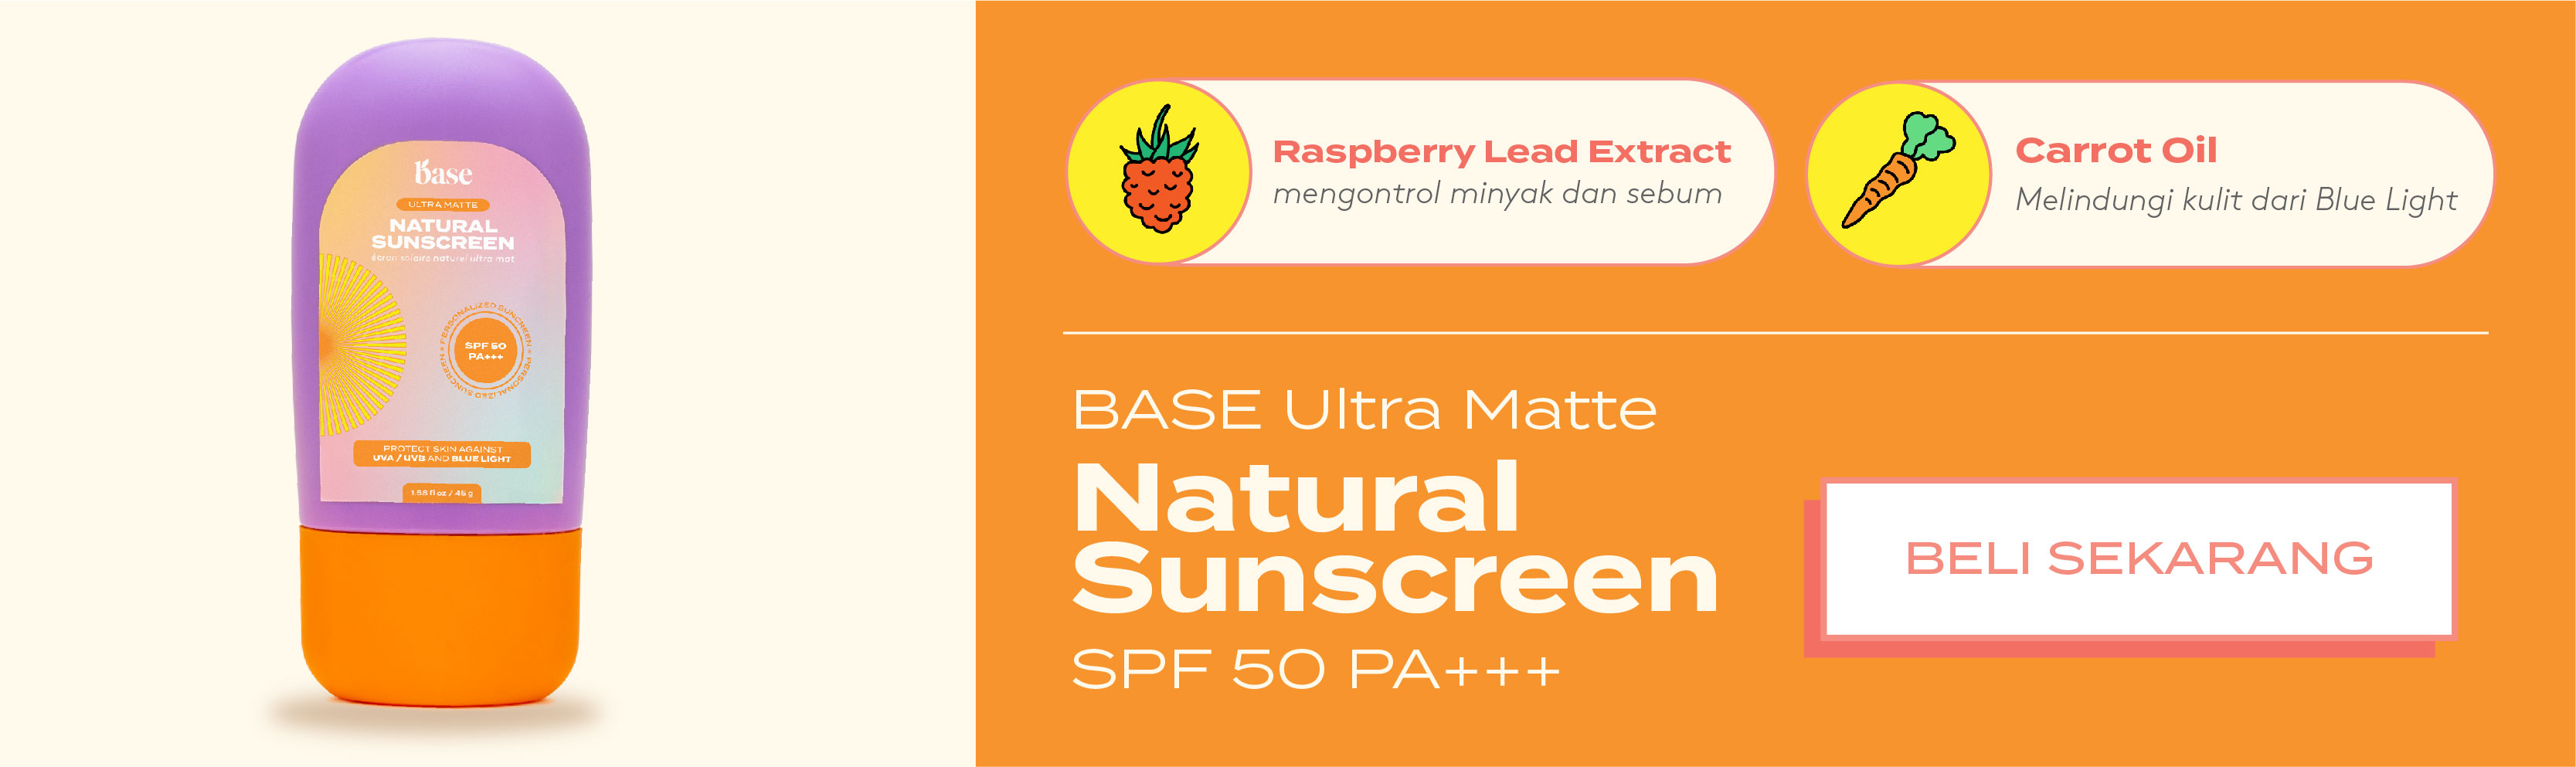 base ultra matte natural sunscreen spf 50 pa+++